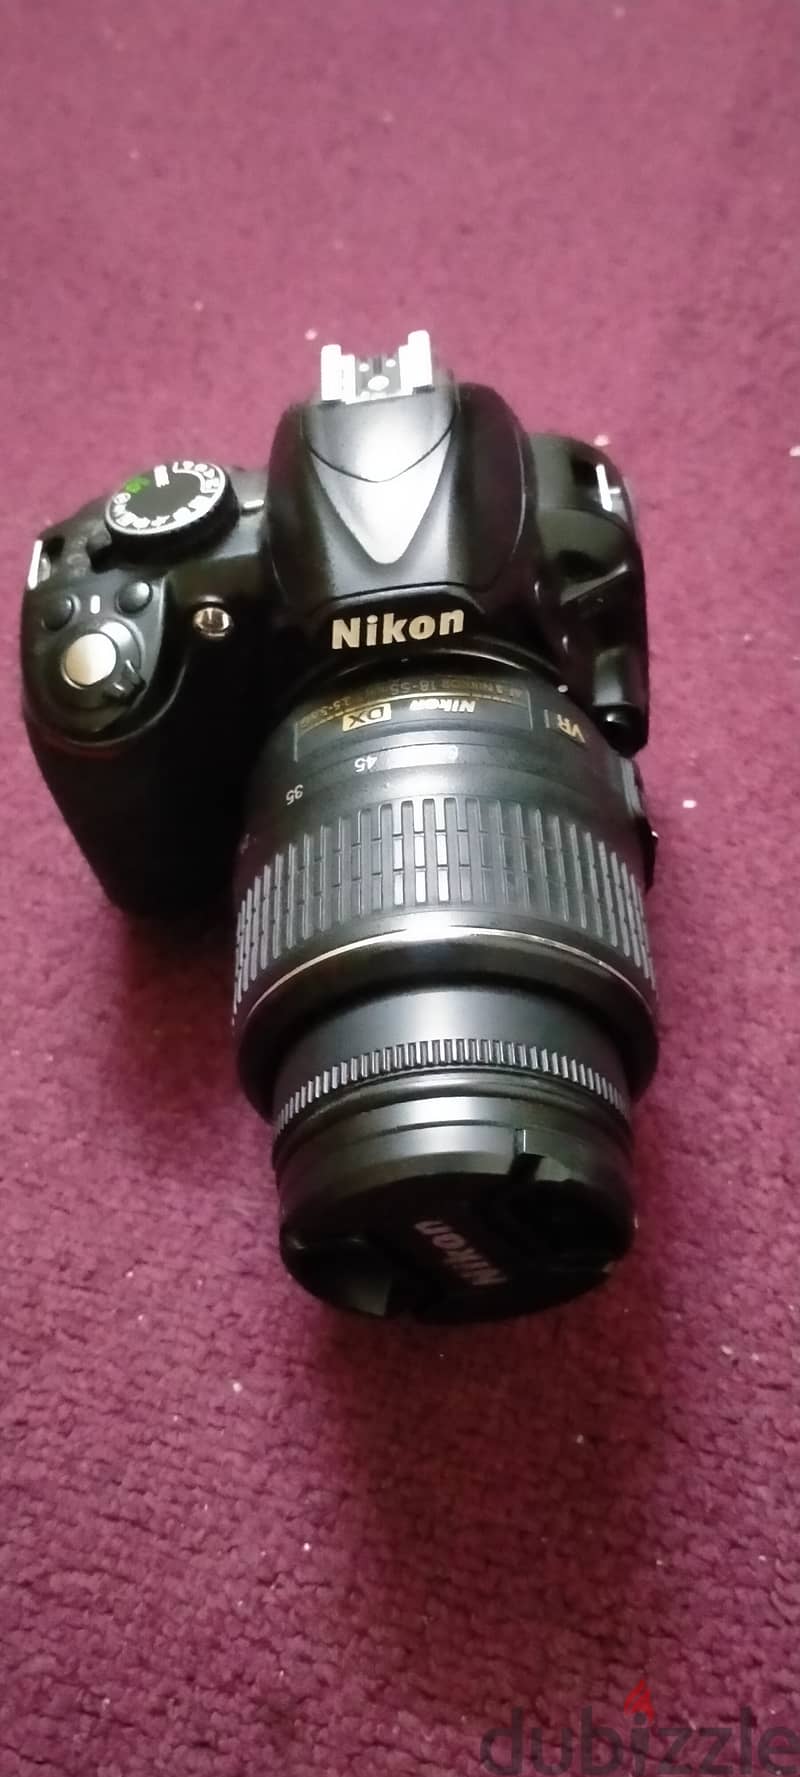 Nikkon camera for sale D3100 2